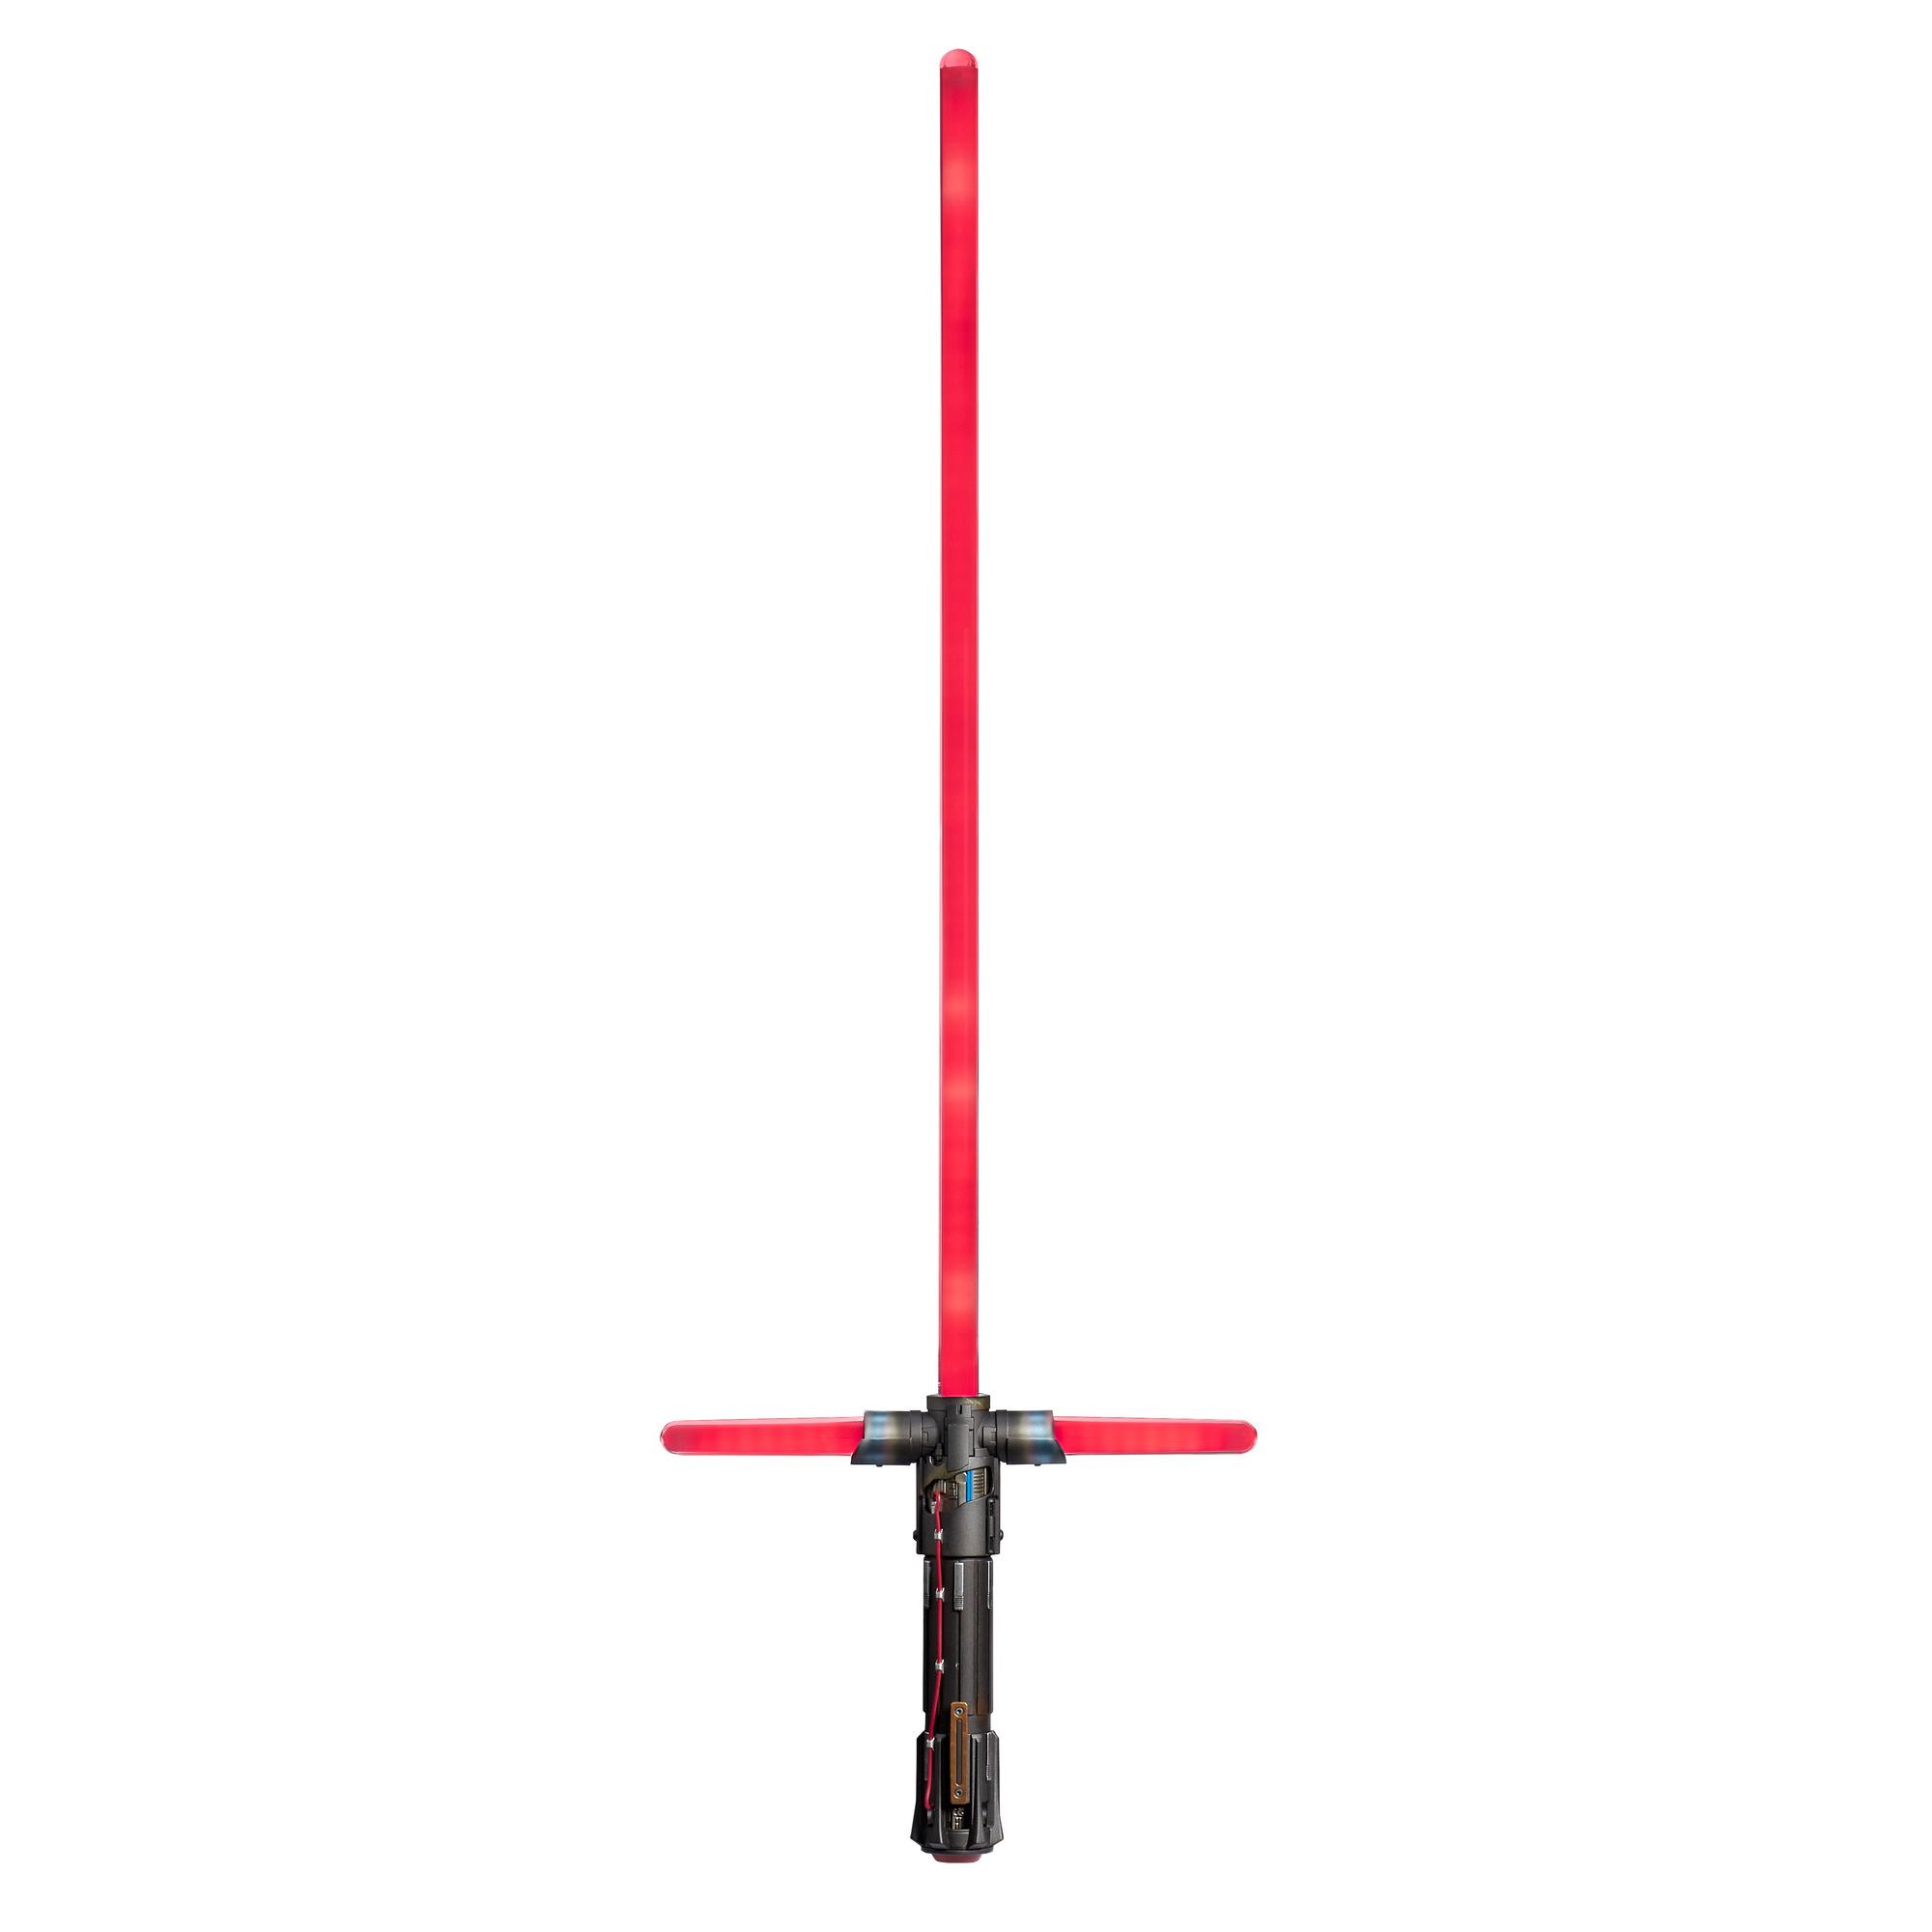 Hasbro C1440 Star Wars Episode 8 Kylo Ren Ultimate FX Laserschwert Lichtschwert 